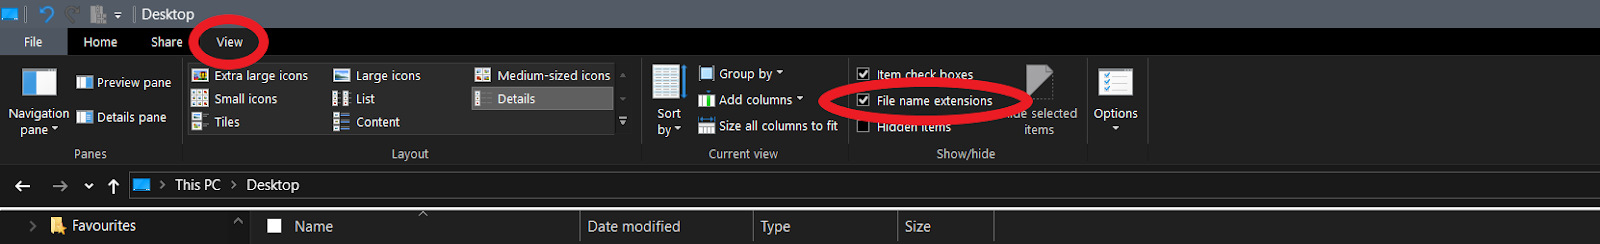 Zet bestandsnaamextenties aan in file explorer via het beeld tab